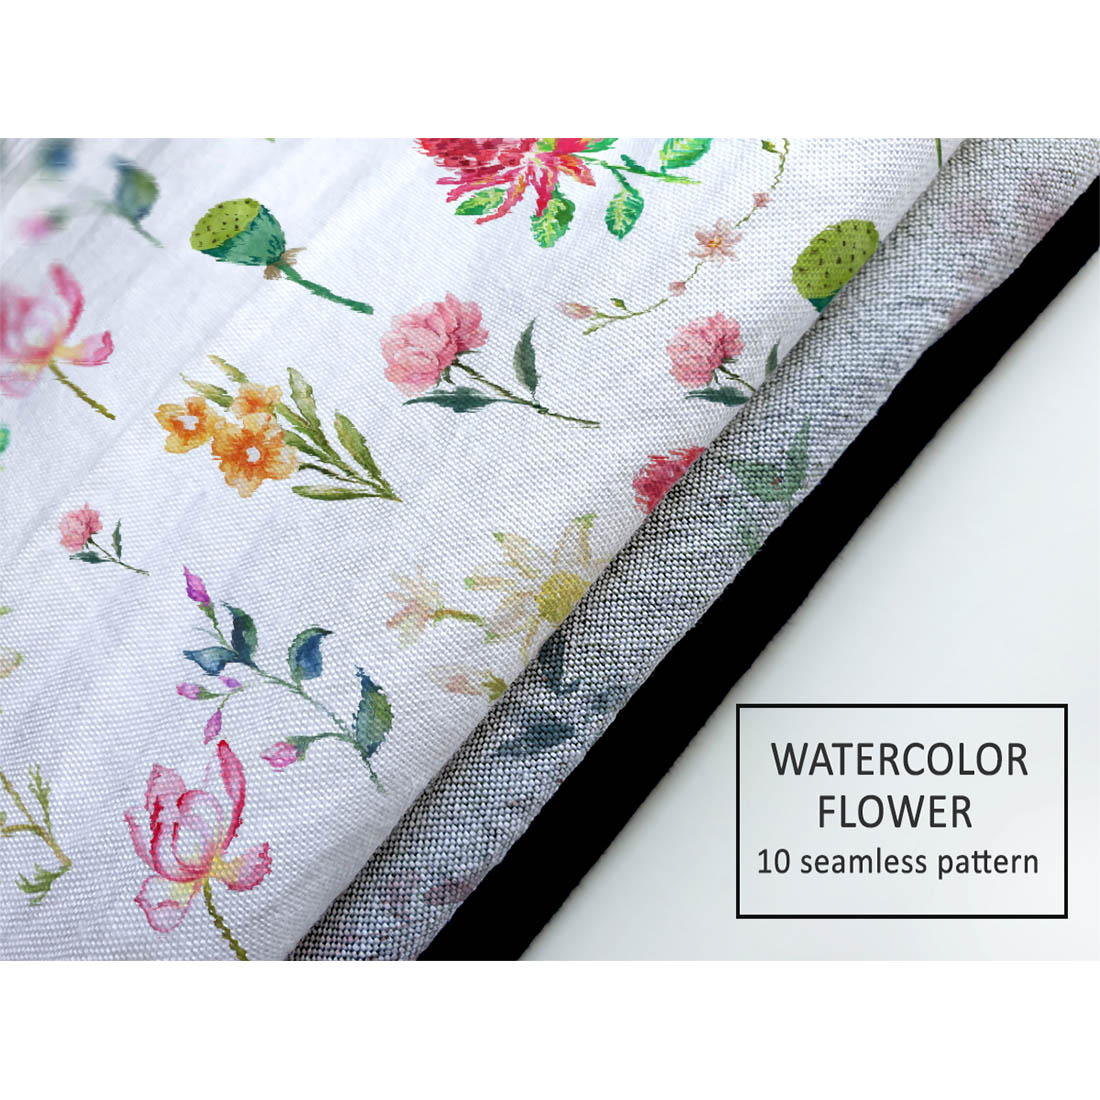 Seamless Watercolor Flower Pattern.